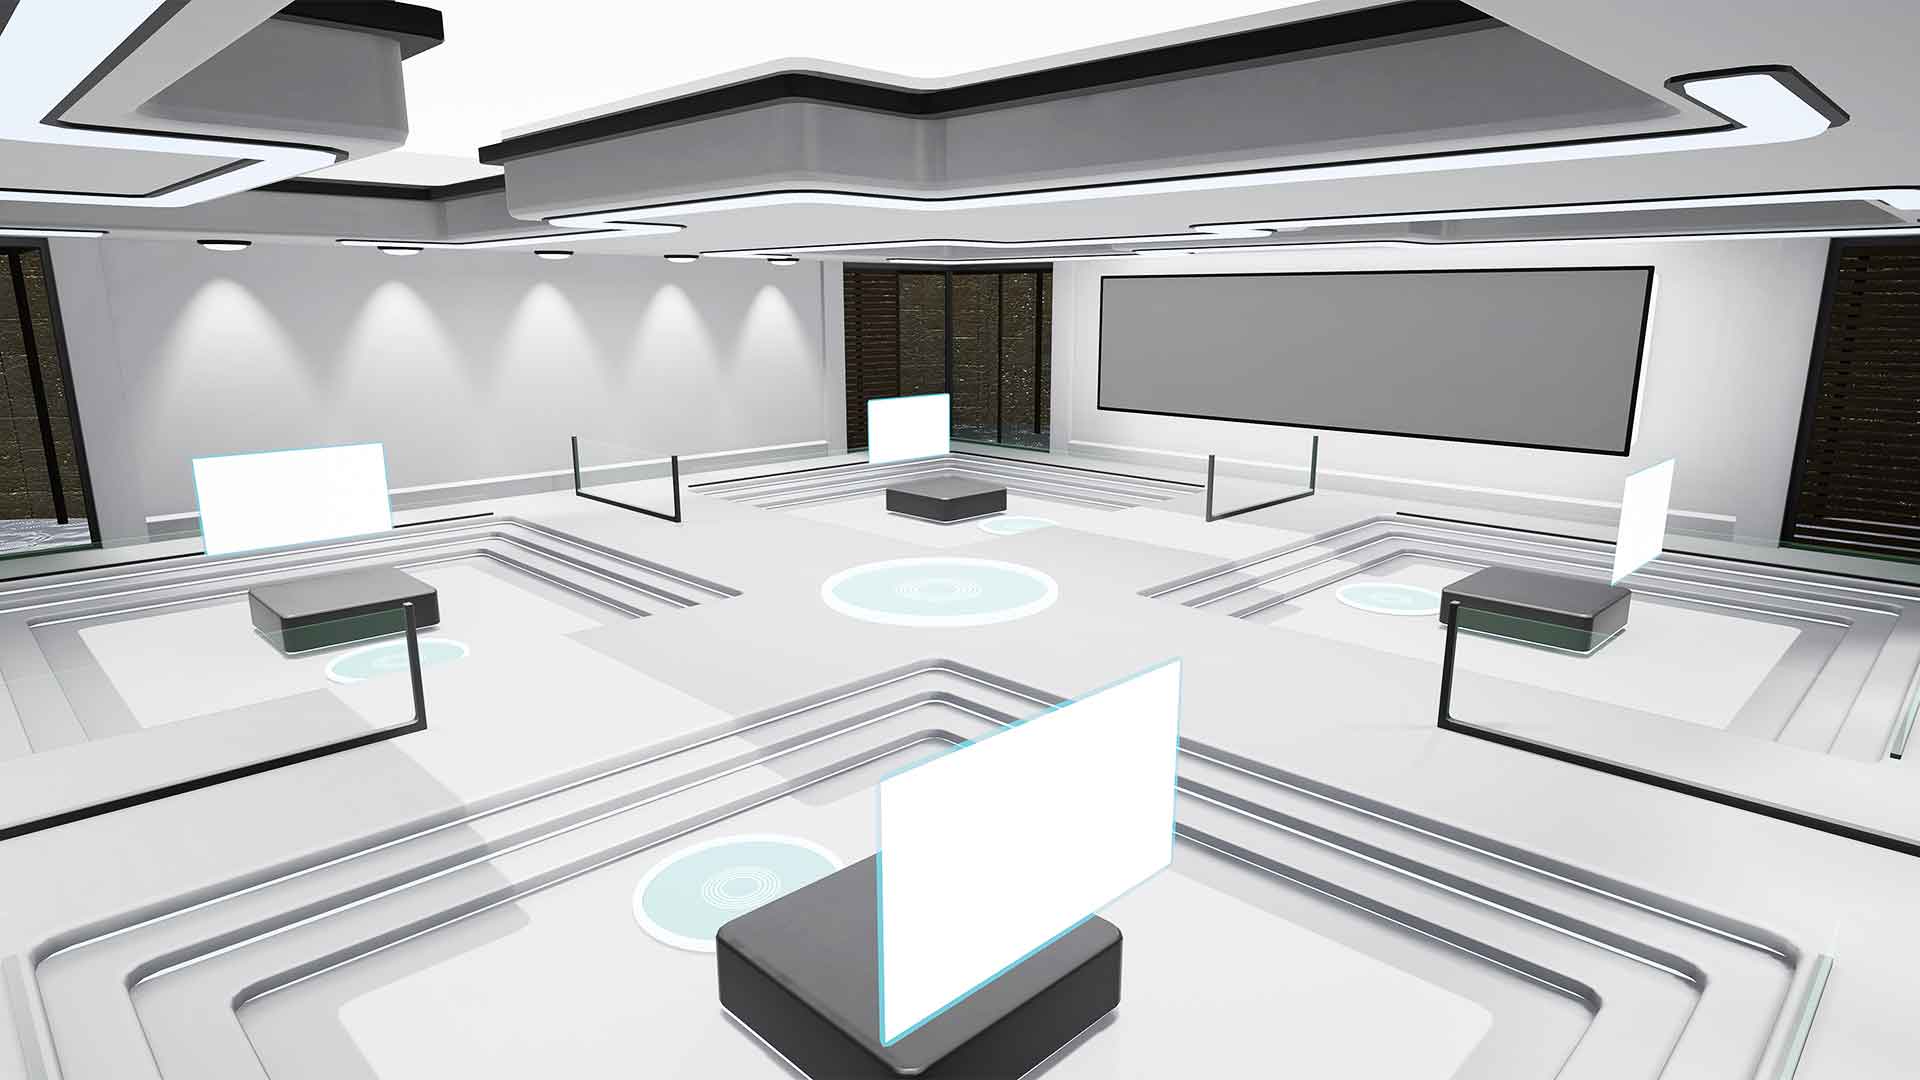 Der virtuelle Schauraum „Futuristisches Museum“ besteht aus 5 unterschiedlichen Räumen in verschiedenen Farben, mit viel Platz für Ihre Produkte, Videos oder Textinhalte.